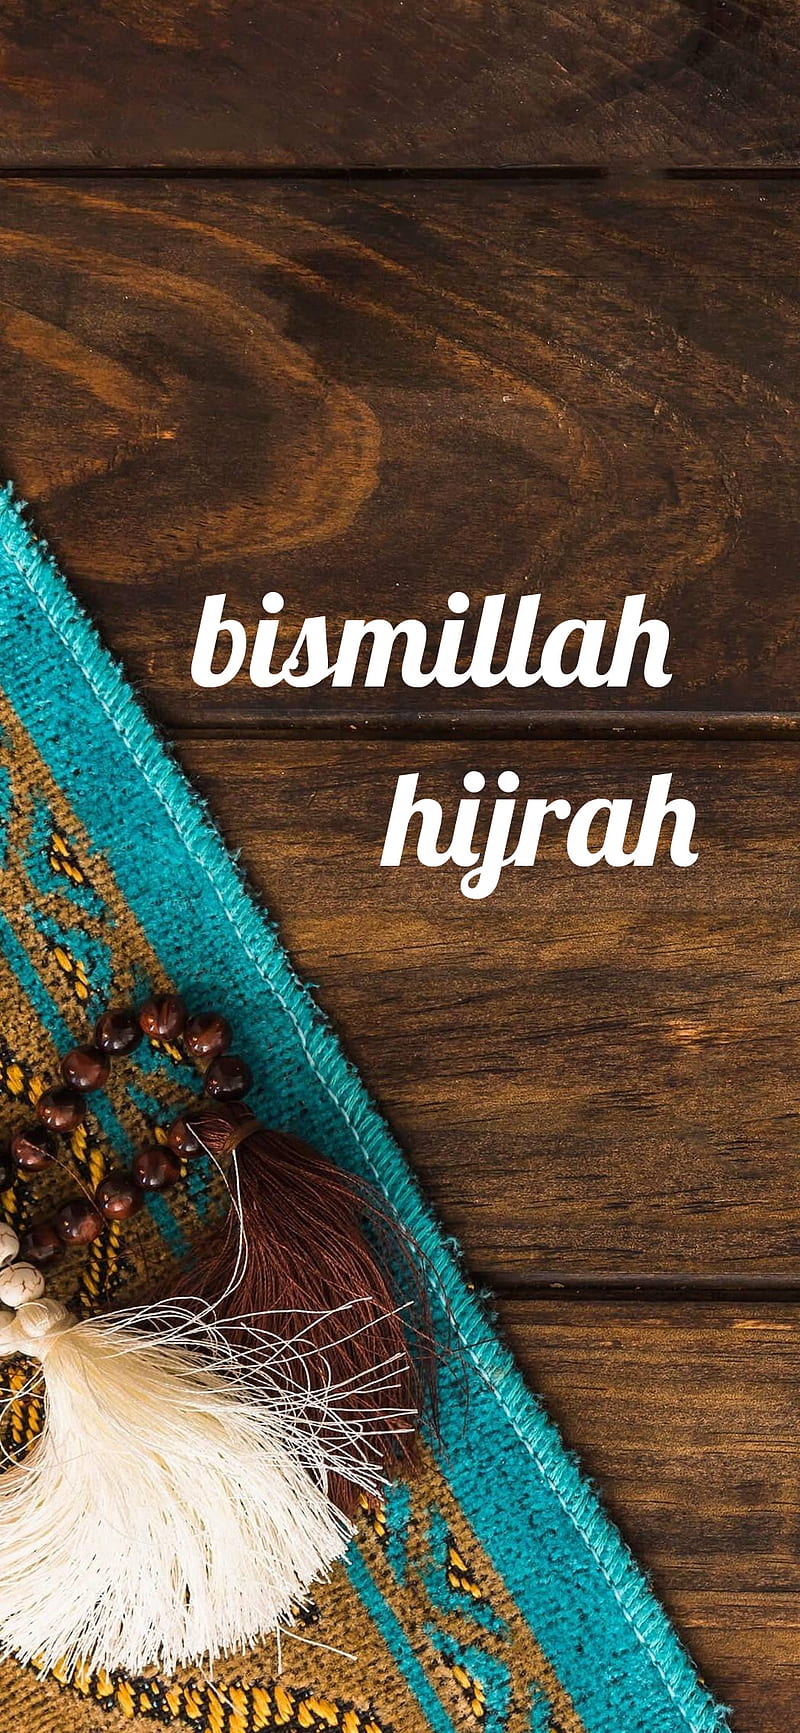 Bismillah hijrah, bismilah, islam, islamic, moslem, muslim, HD phone wallpaper